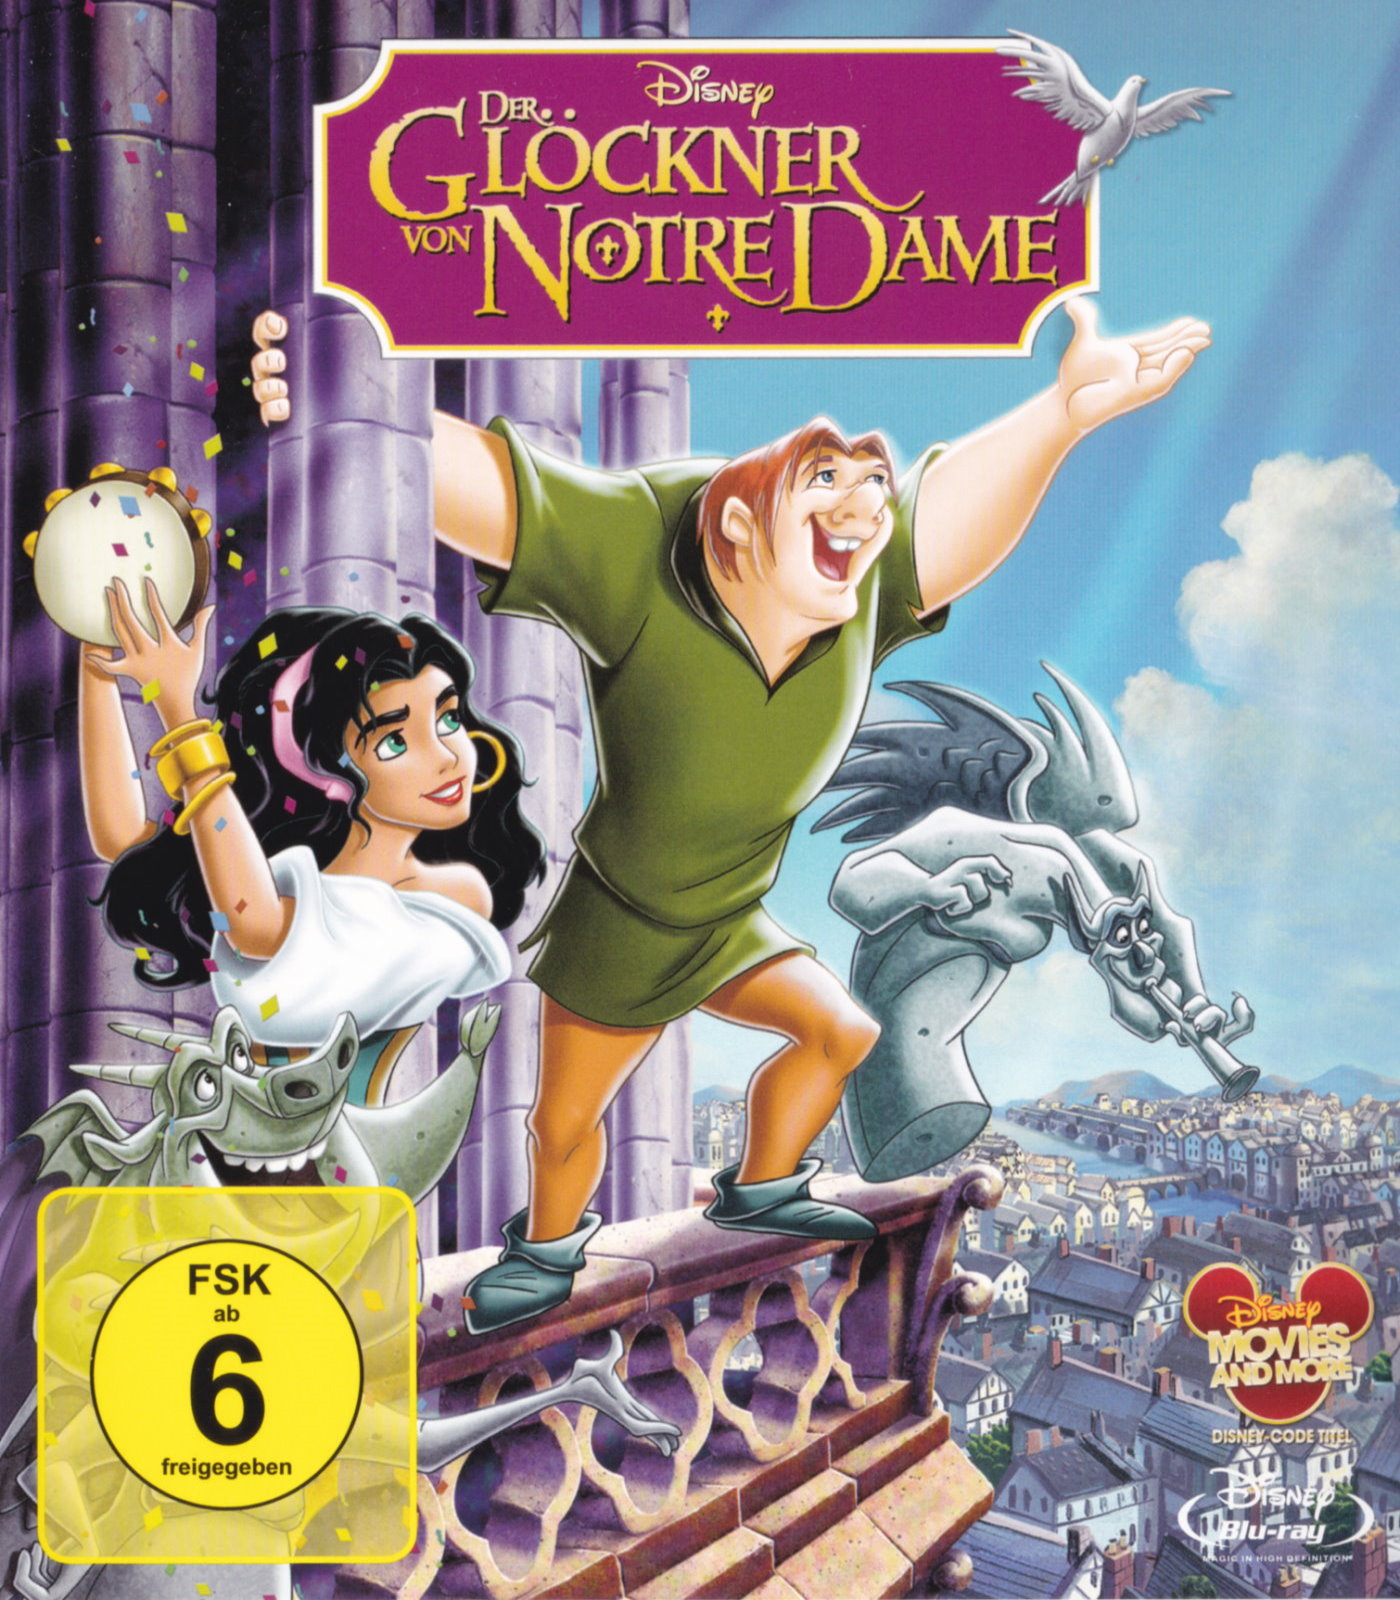 Cover - Der Glöckner von Notre Dame.jpg